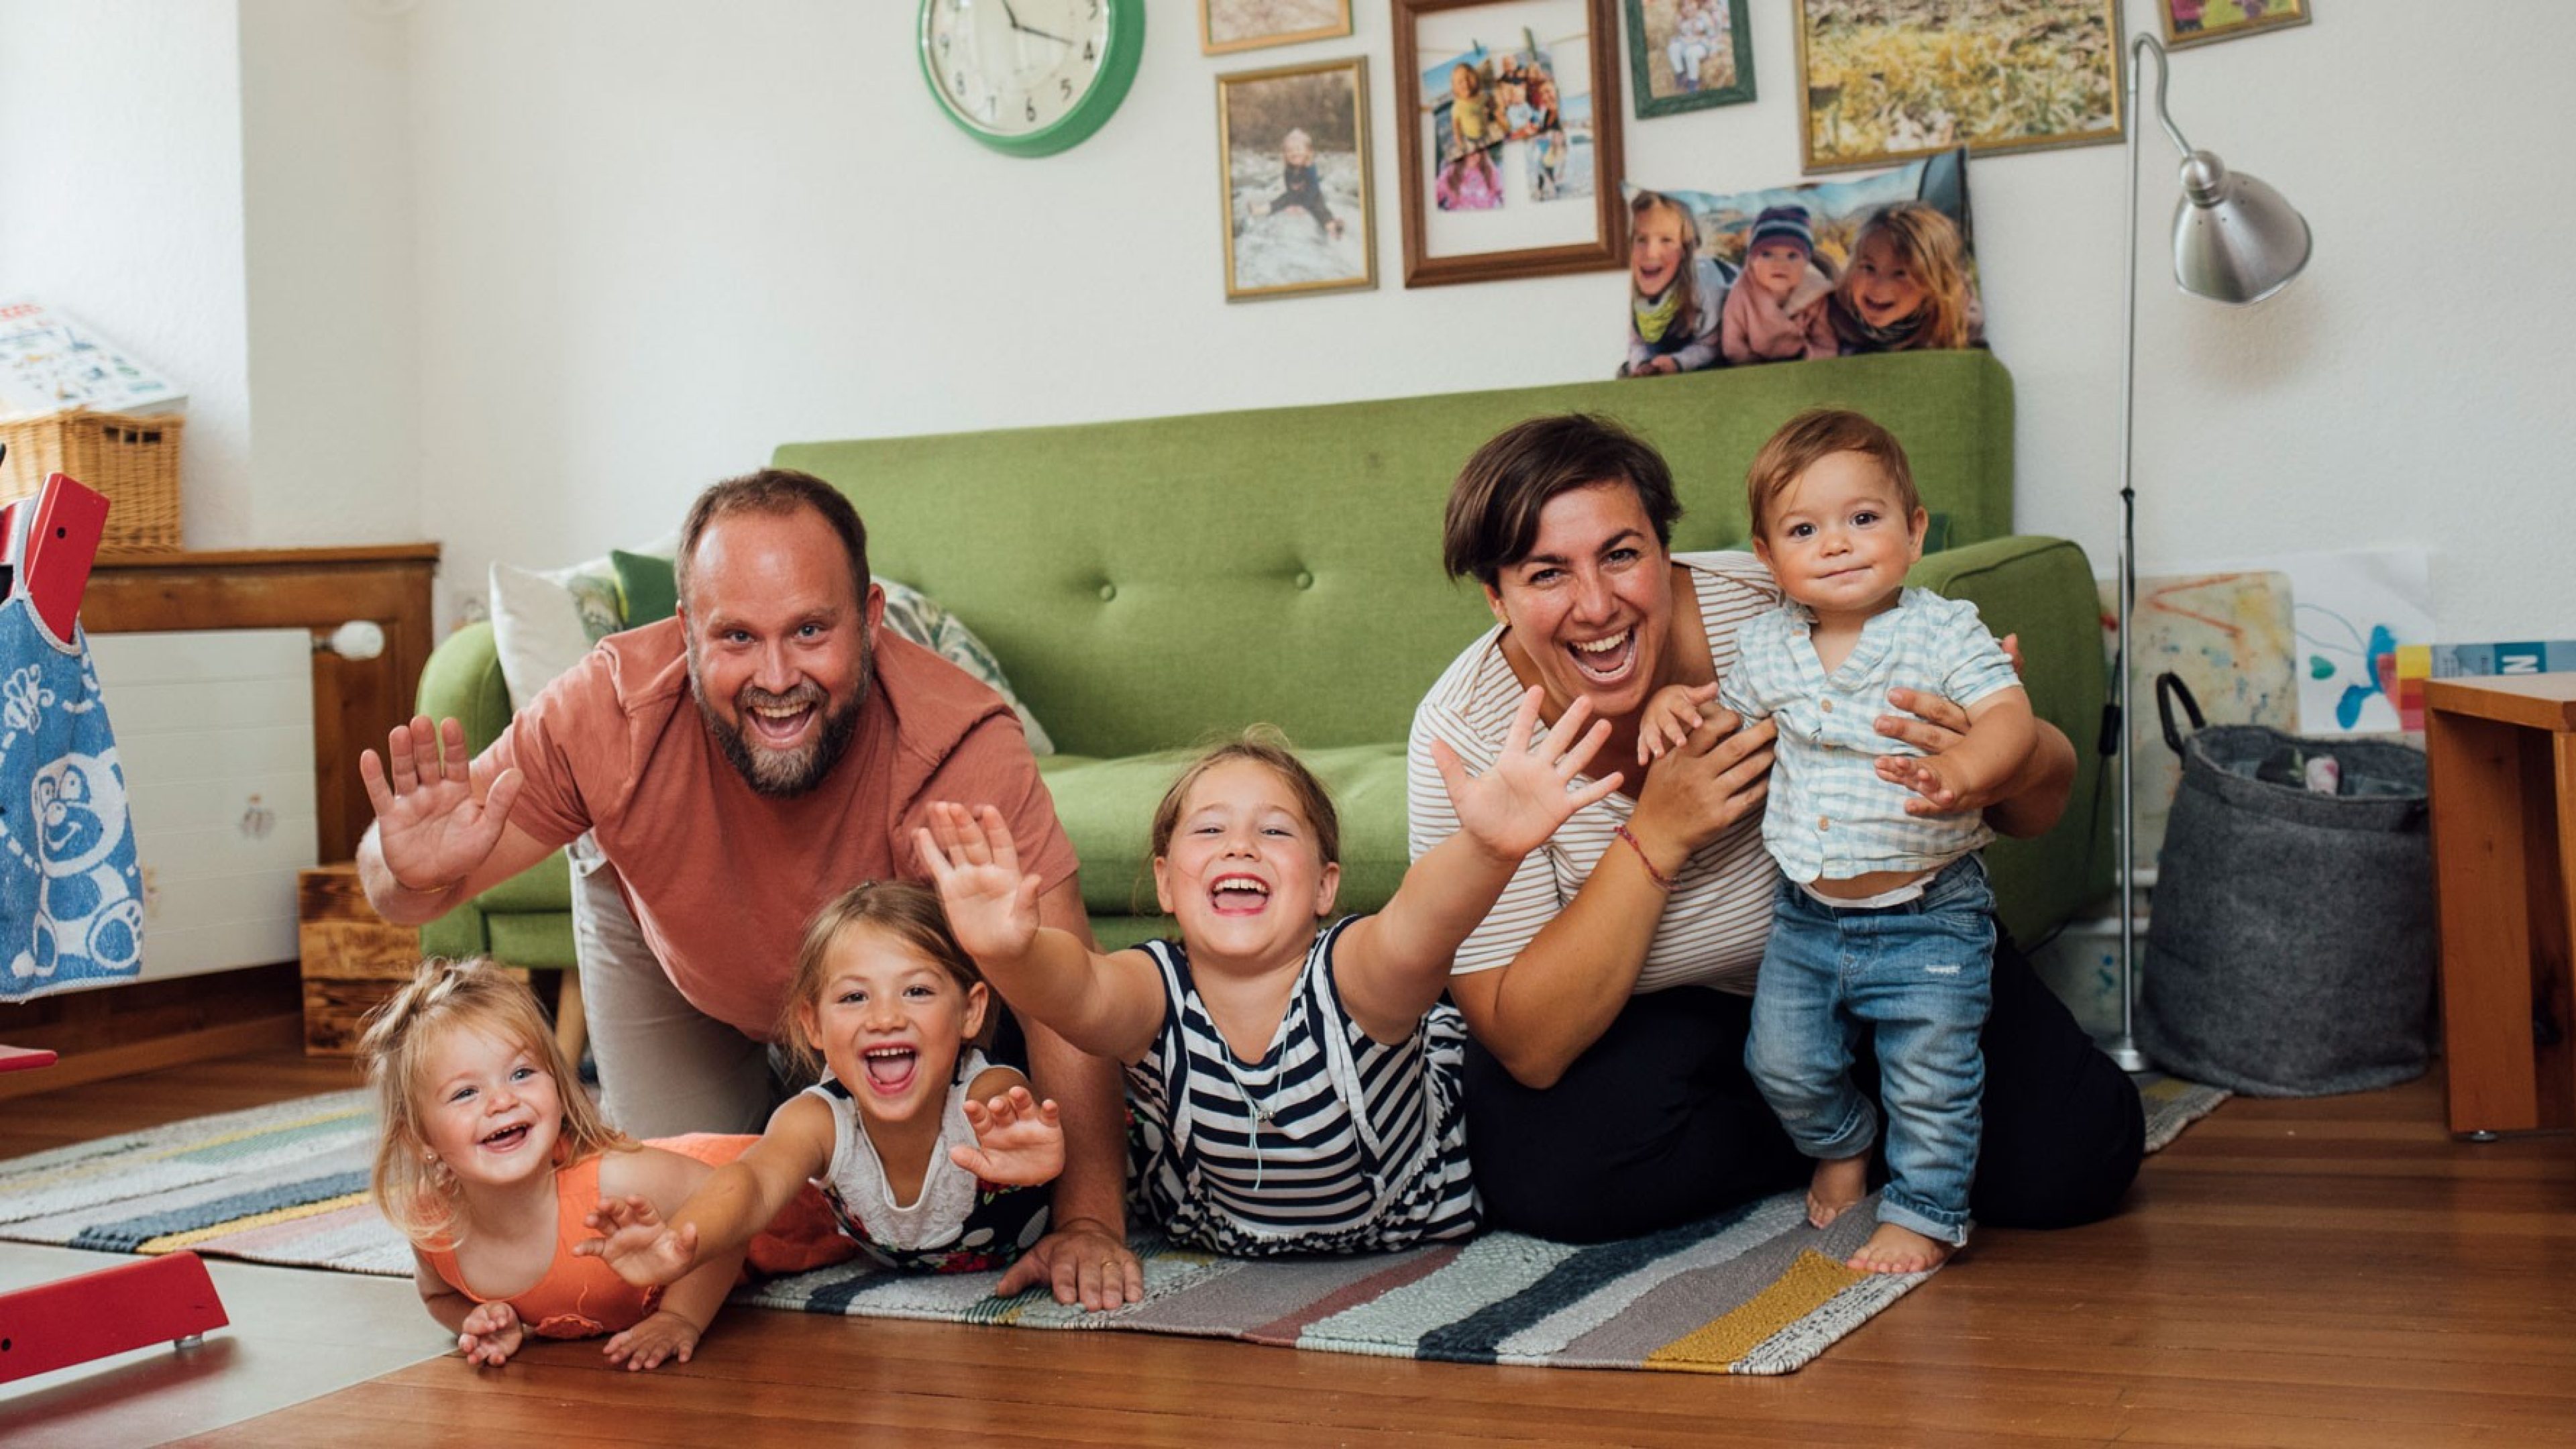 Eltern mit Kindern lachend in einem Wohnzimmer mit einem grünen Sofa und Bildern an der Wand 